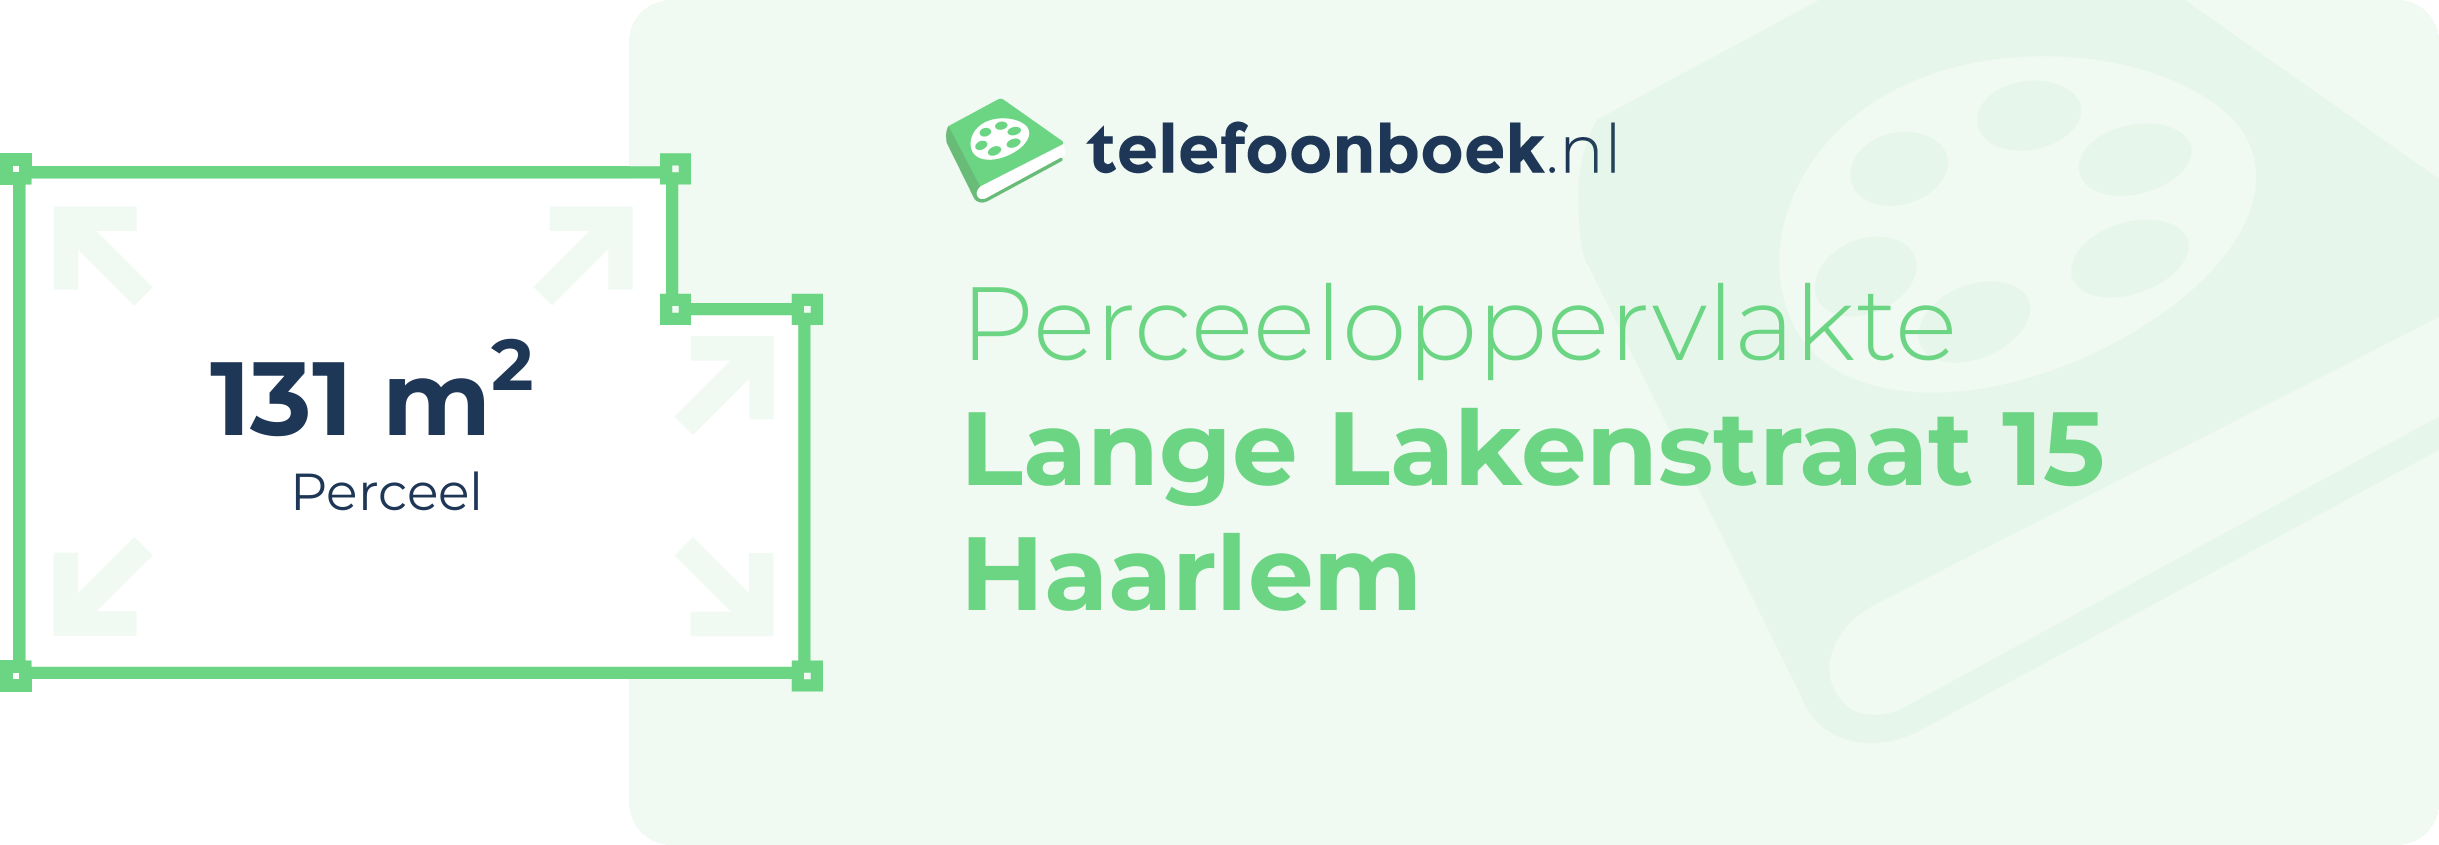 Perceeloppervlakte Lange Lakenstraat 15 Haarlem